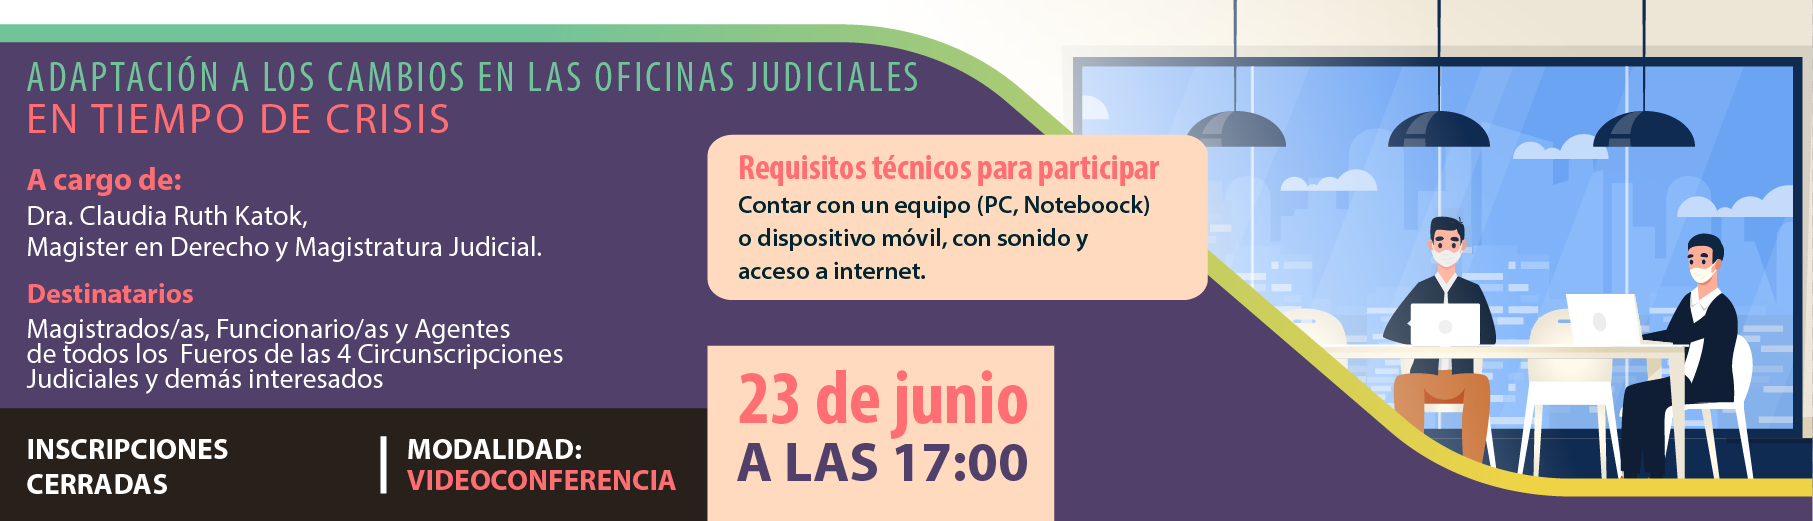 InC_Adaptacin_a_los_Cambios_en_las_Oficinas_Judiciales_en_Tiempo_de_Crisis-01